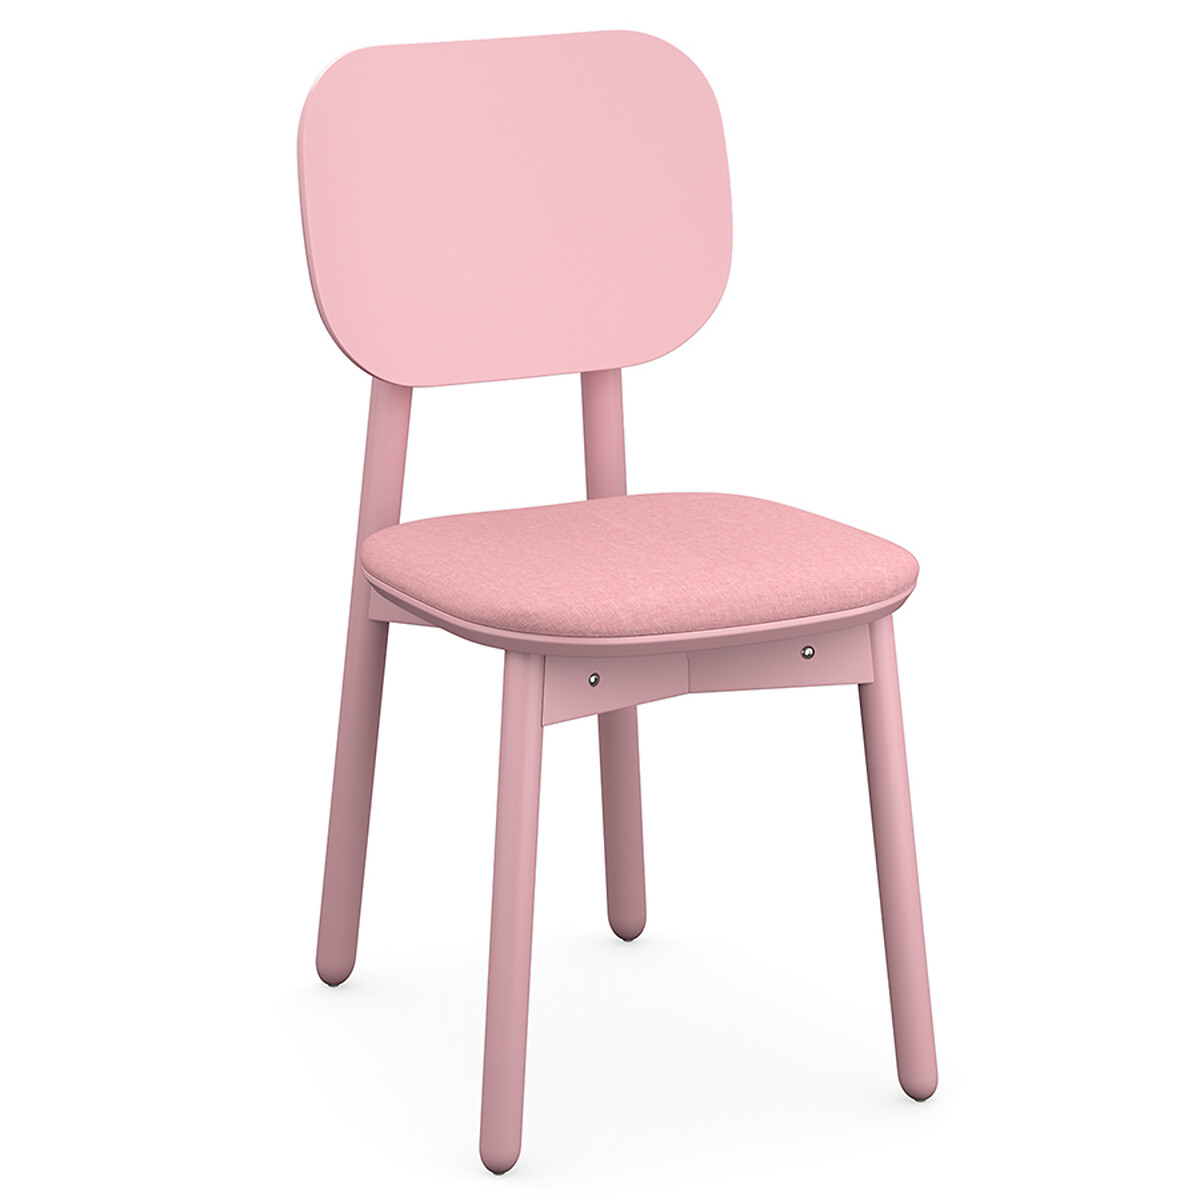 Стул Saga рогожка единый размер розовый стул eirill единый размер розовый